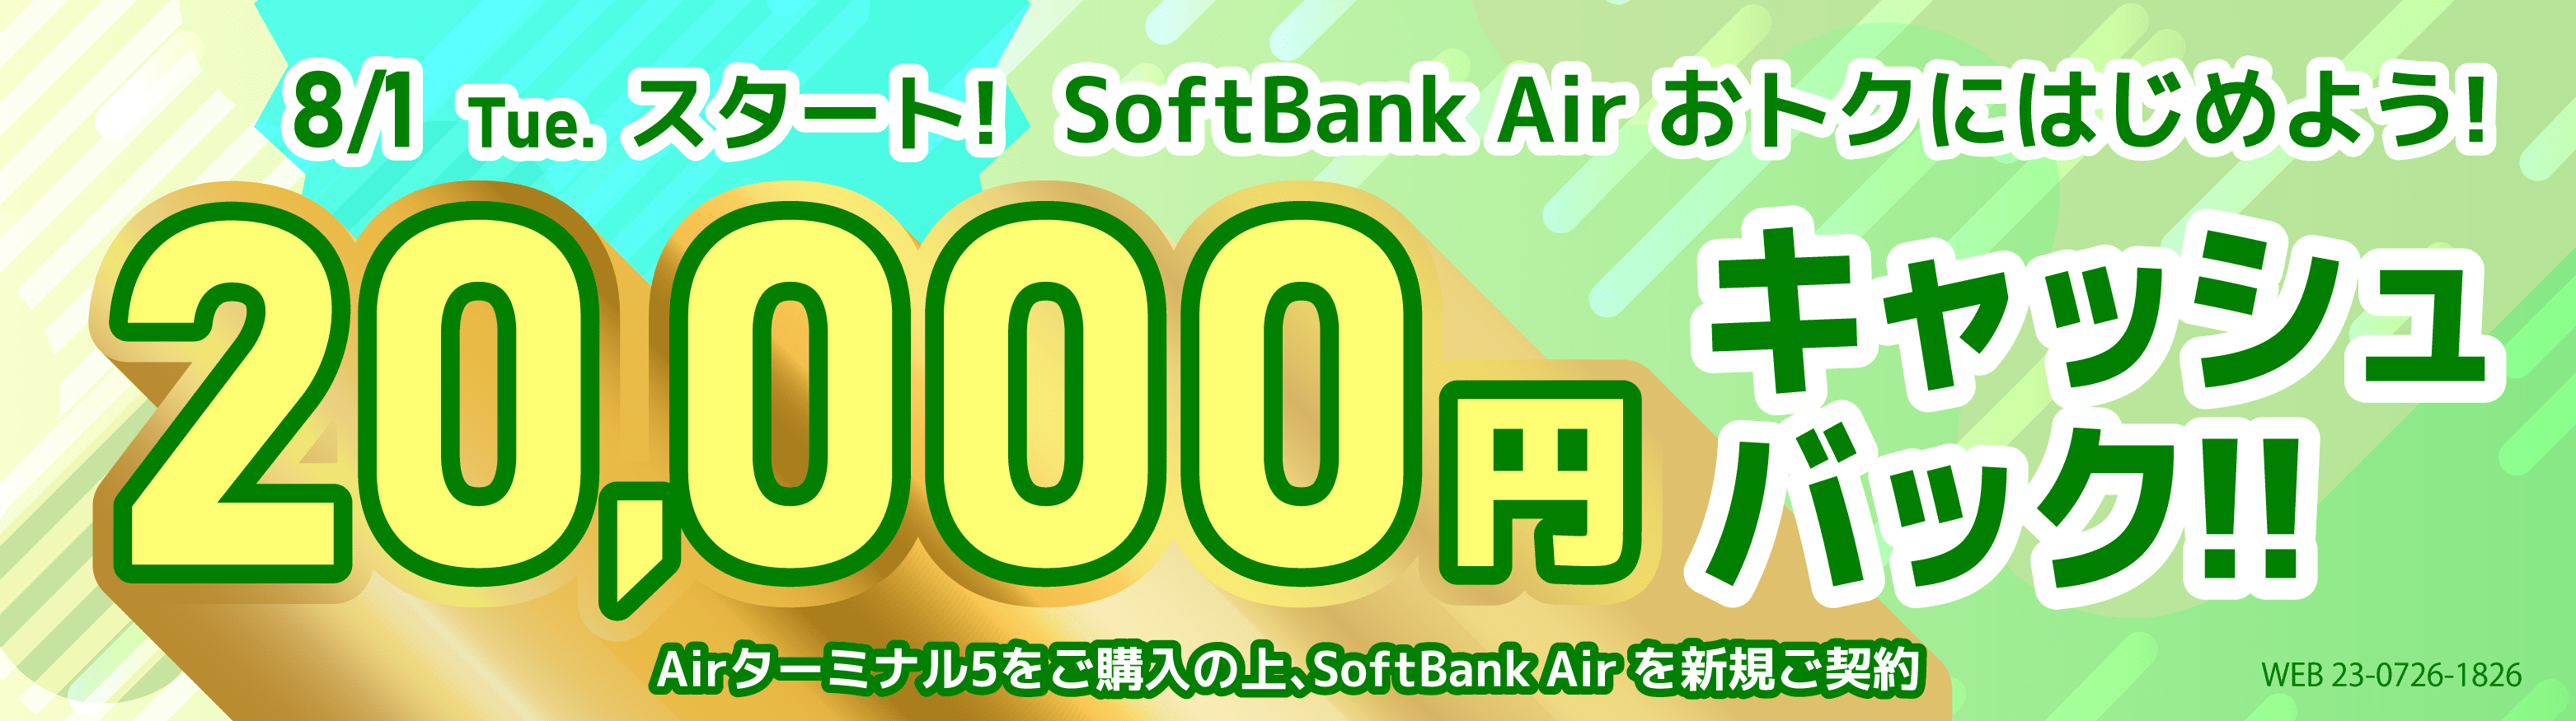 8月1日火曜日スタート！　SoftBank Air おトクにはじめよう！　  20,000円キャッシュバック!!　Airターミナル5をご購入の上、SoftBank Air を新規ご契約 